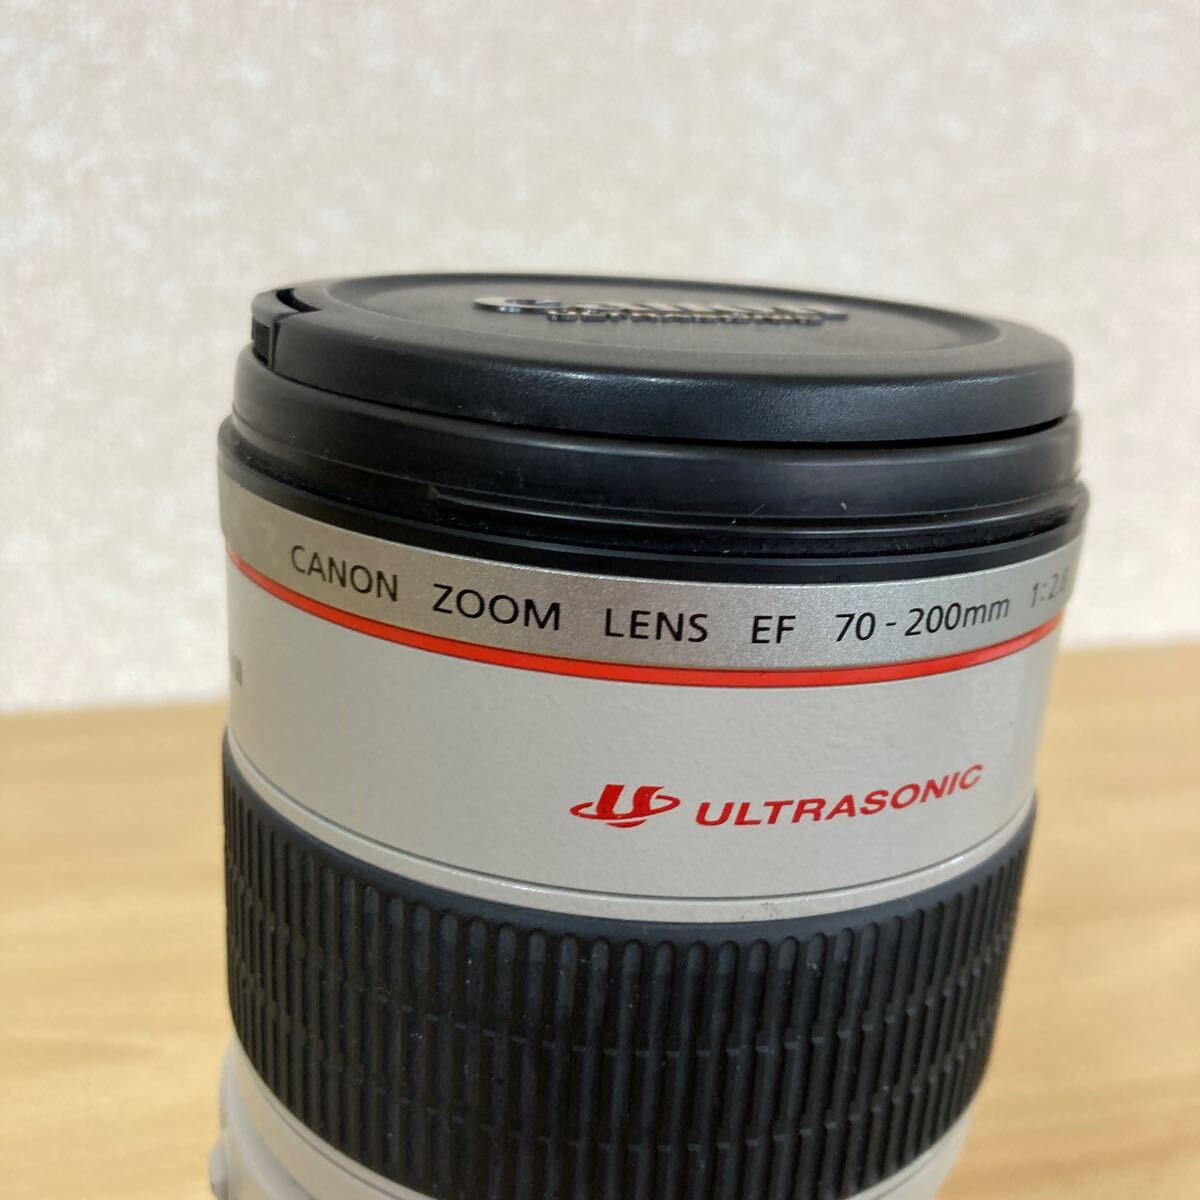 Canon キャノン CANON ZOOM LENS EF 70-200mm 1:2.8 L IS USM ULTRASONIC カメラアクセサリー ズームレンズ 4 カ 5518の画像2